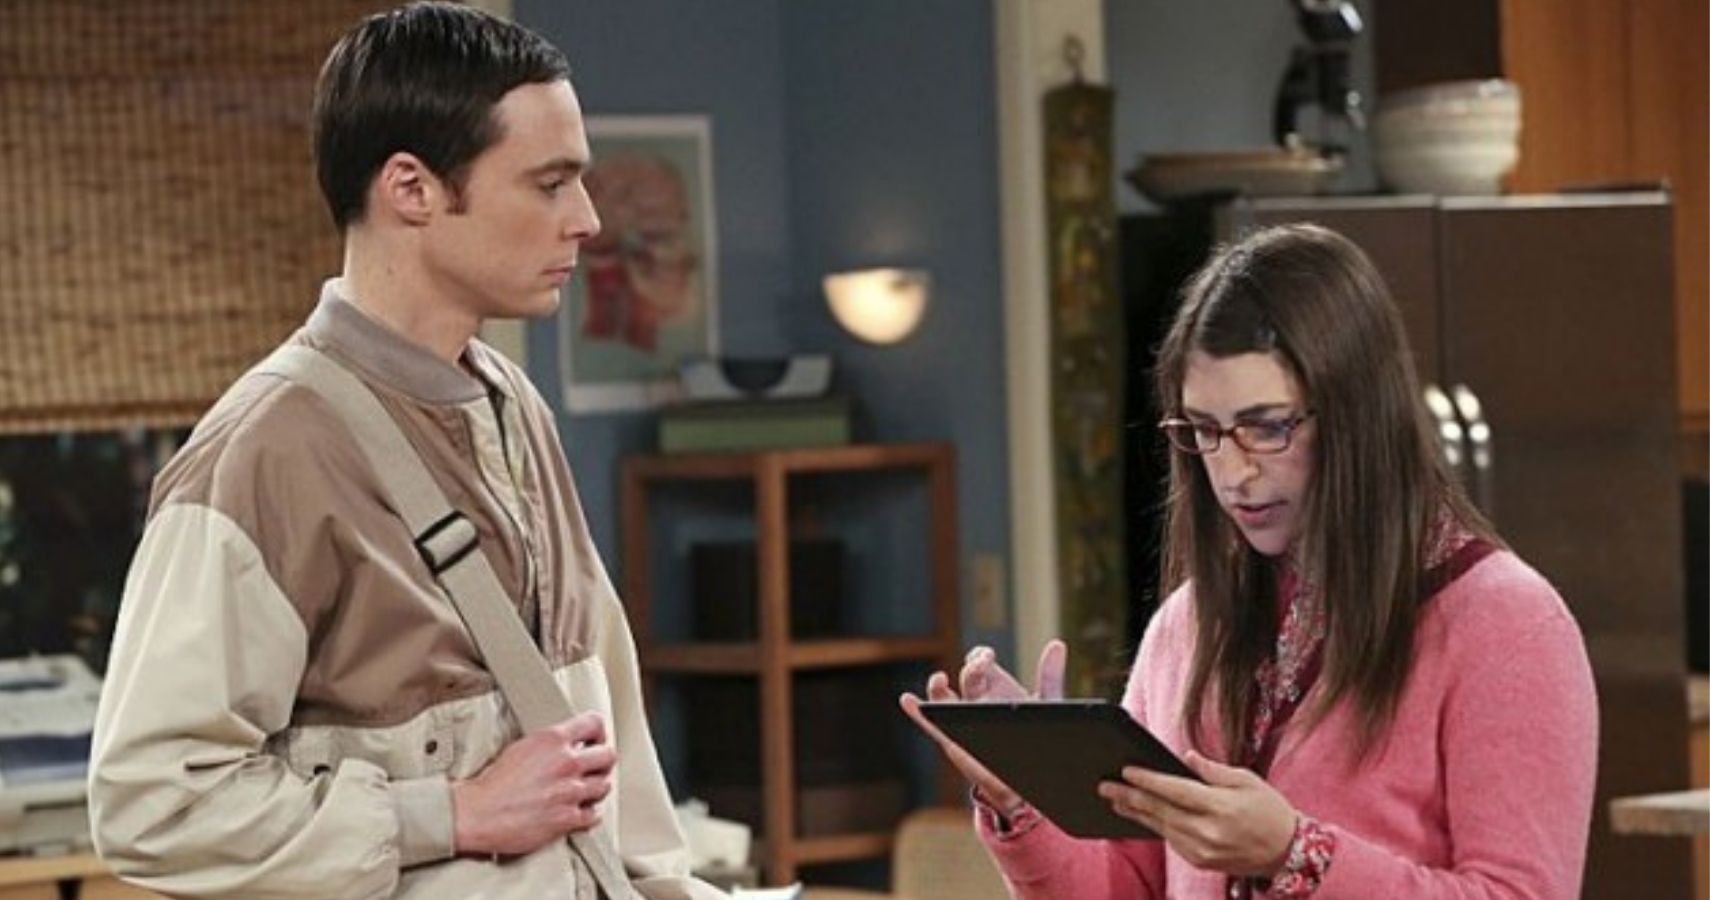 The Big Bang Theory - Sheldon and Amy